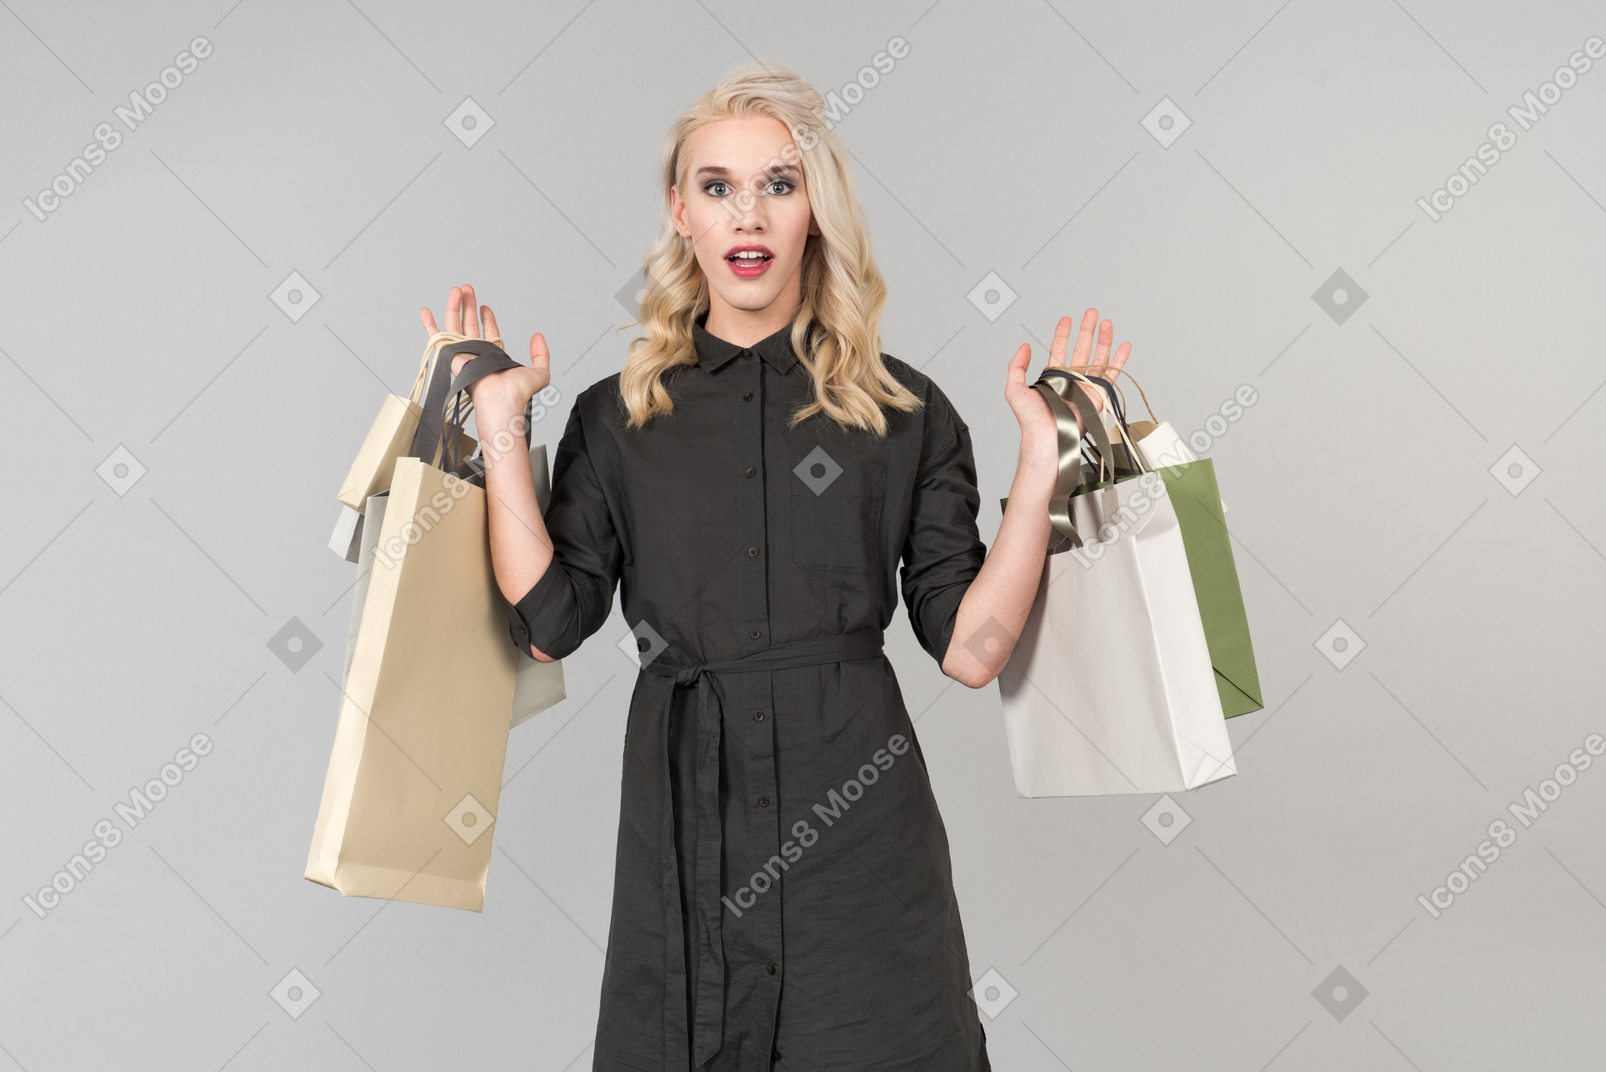 両手で買い物袋の束を保持している黒いドレスの美しい金髪美人